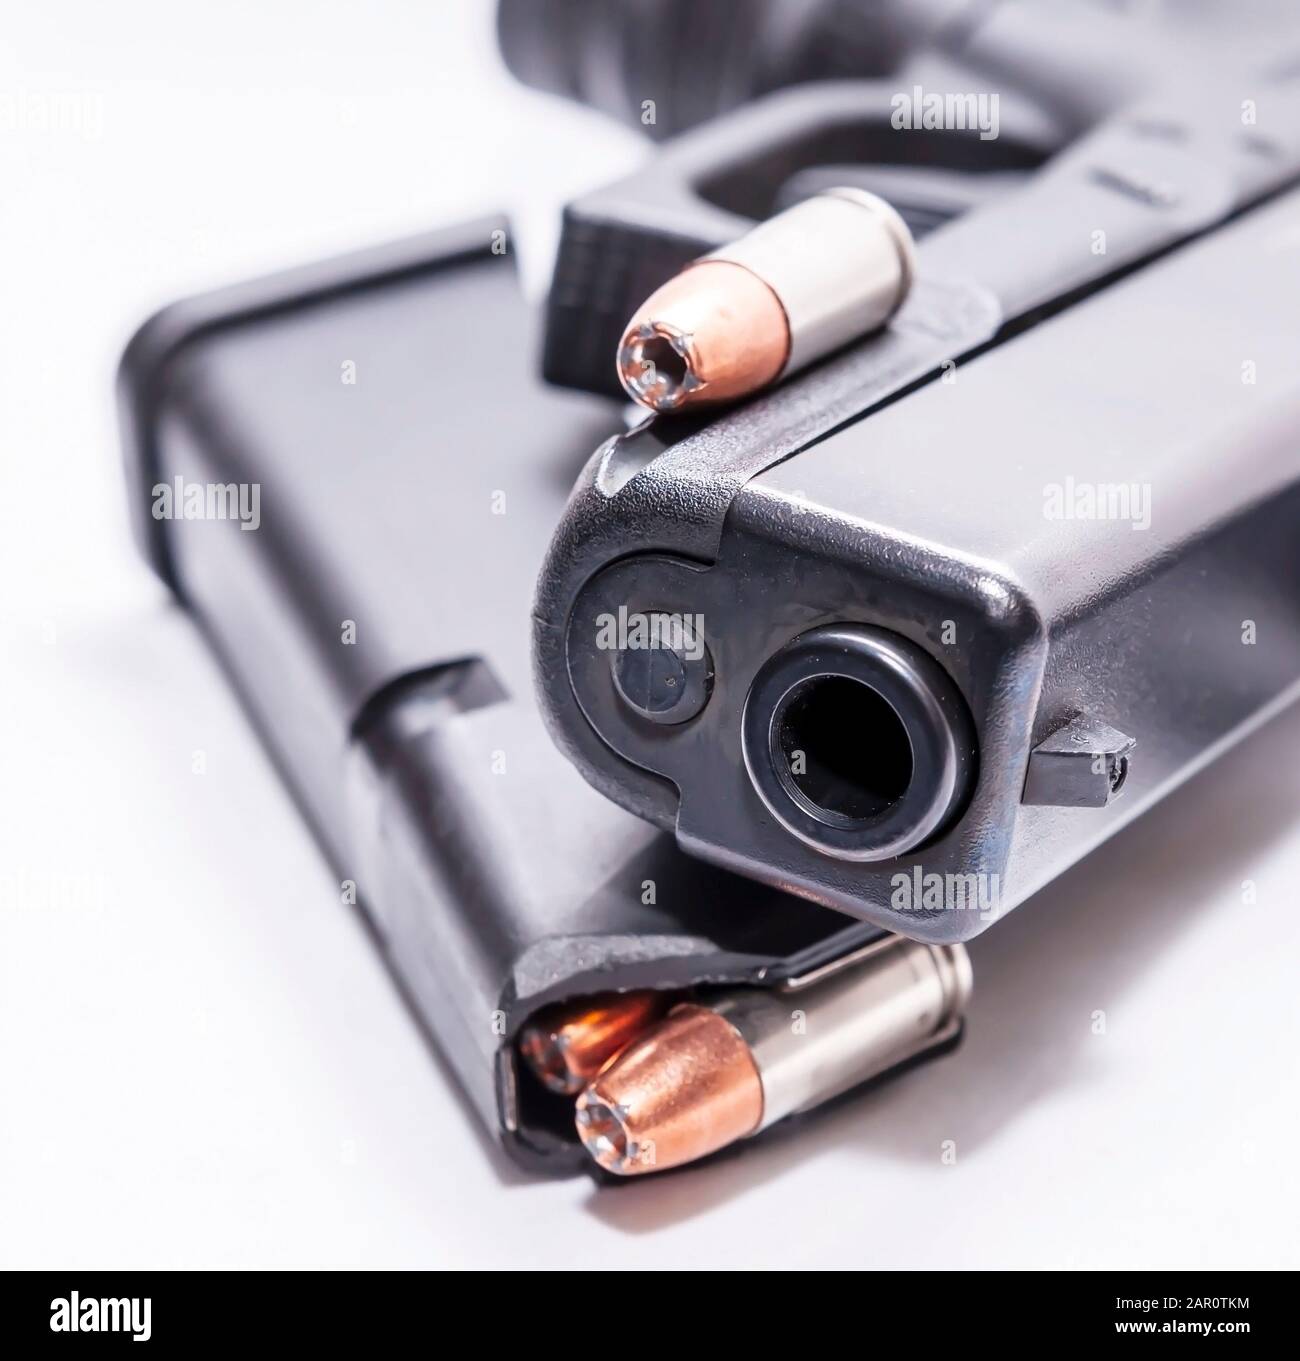 Una pistola semi-automatica 9mm nera con caricatore a pistola caricato con un unico proiettile a punta cava 9mm su sfondo bianco Foto Stock